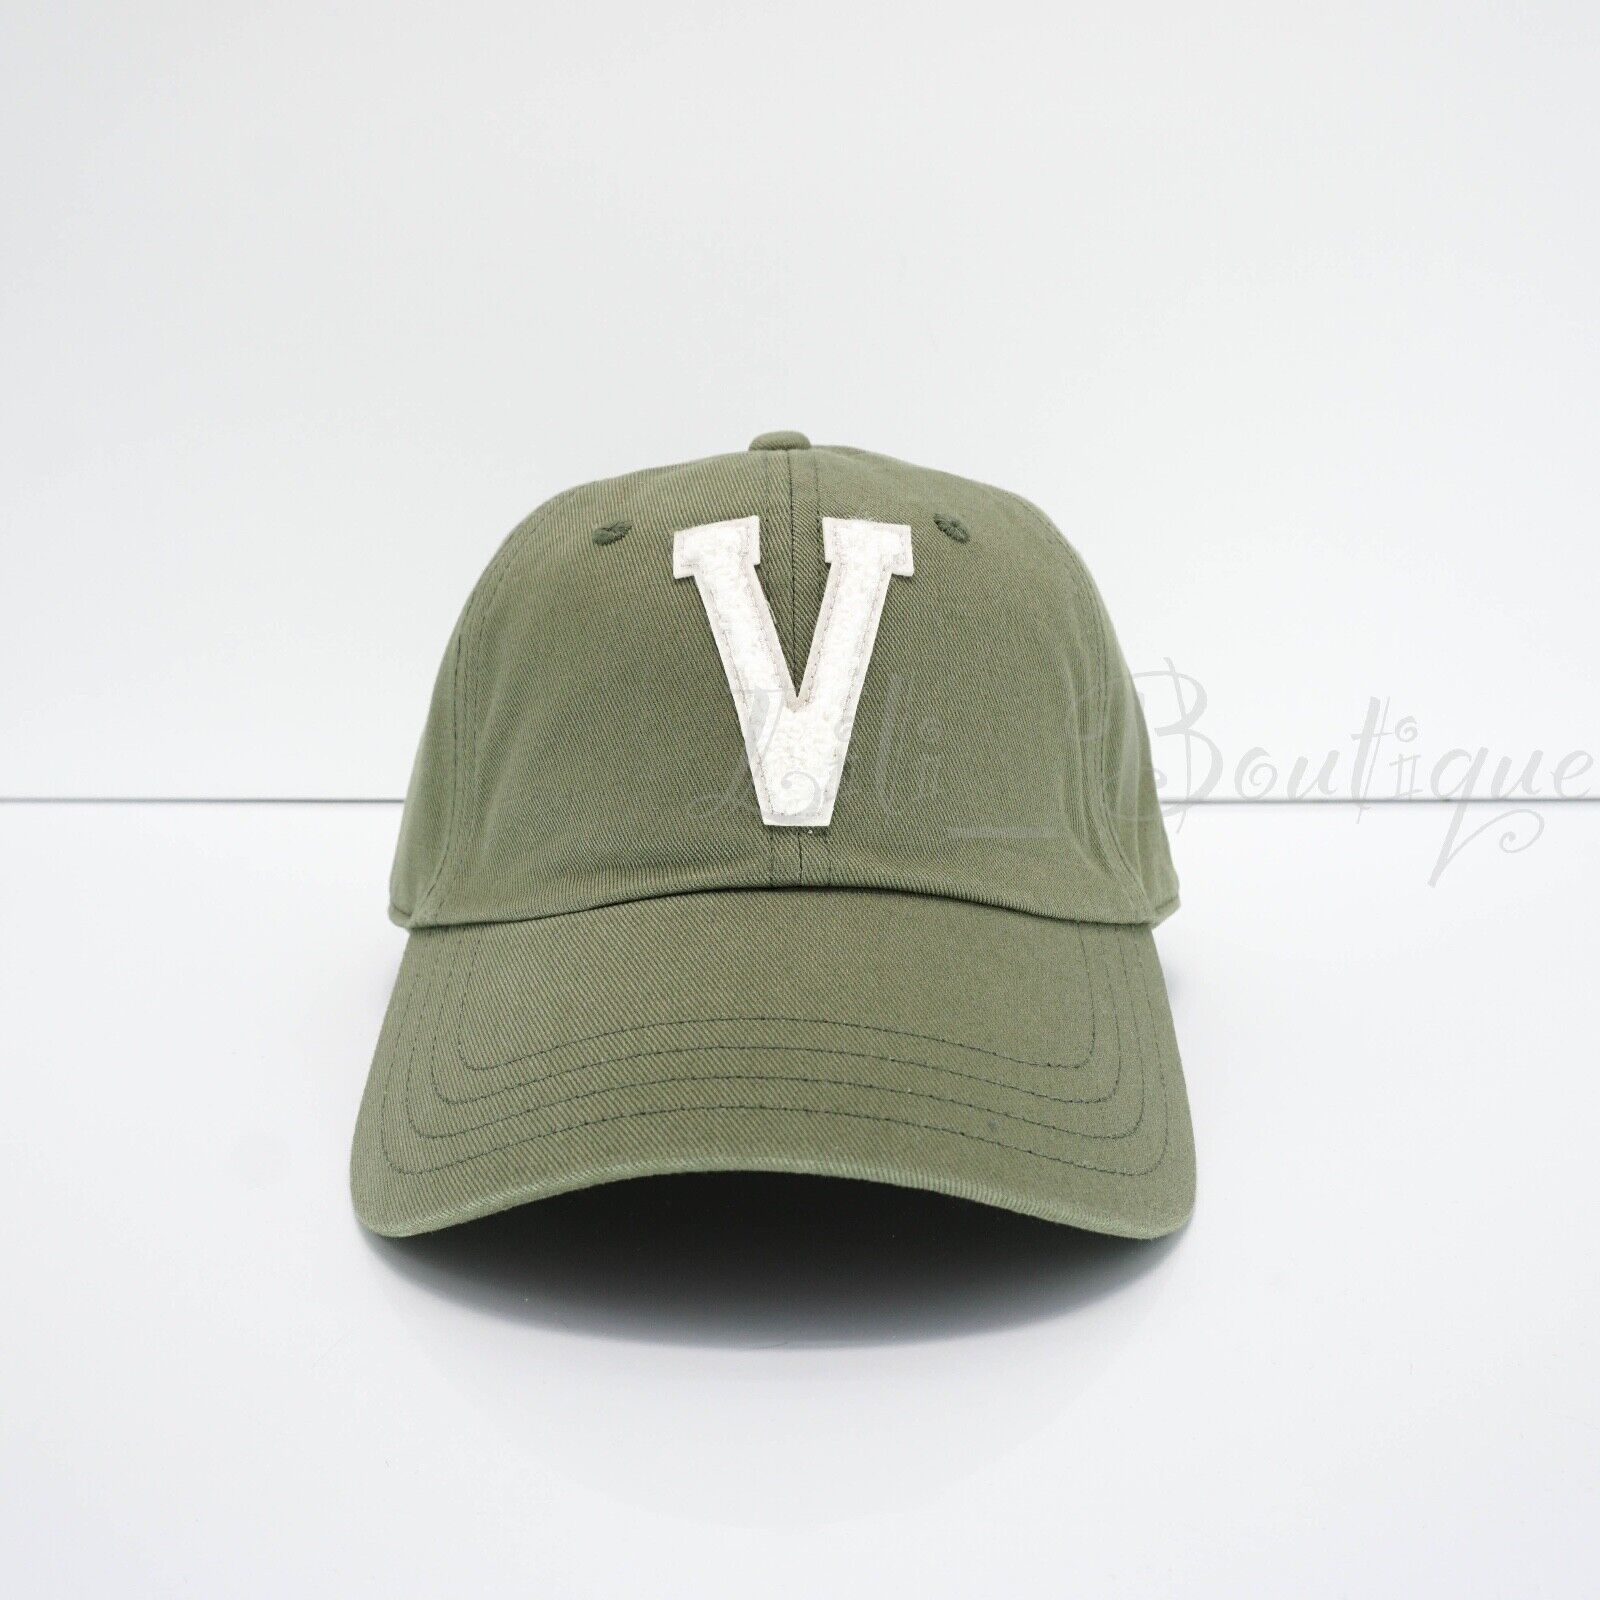 Primary image for NWT Vans VN000A9BZBF Flying V Cap Strap-back Adjustable Baseball Hat Green $32